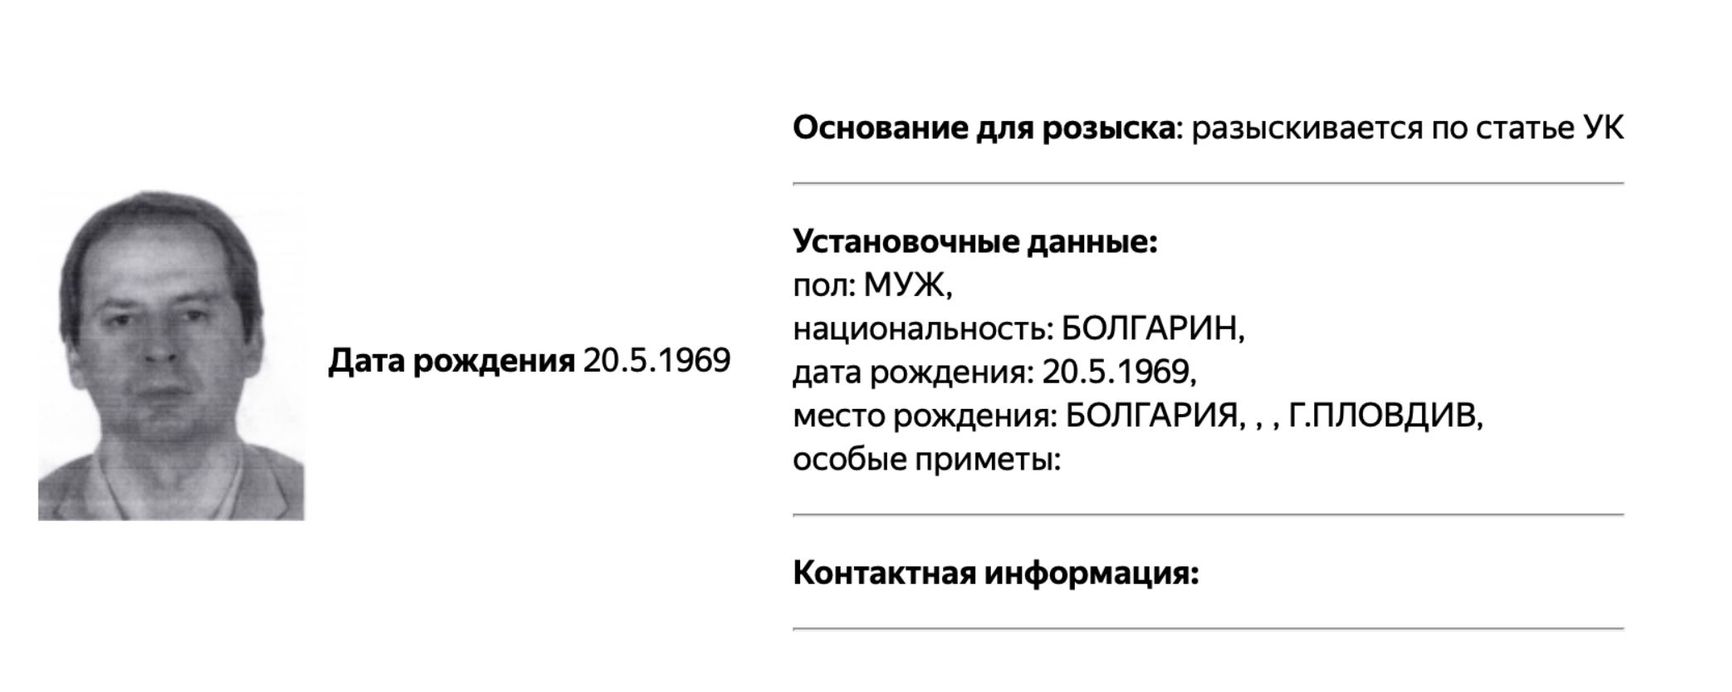 На Христо Грозева завели дело в России, МВД добавило его в базу розыска